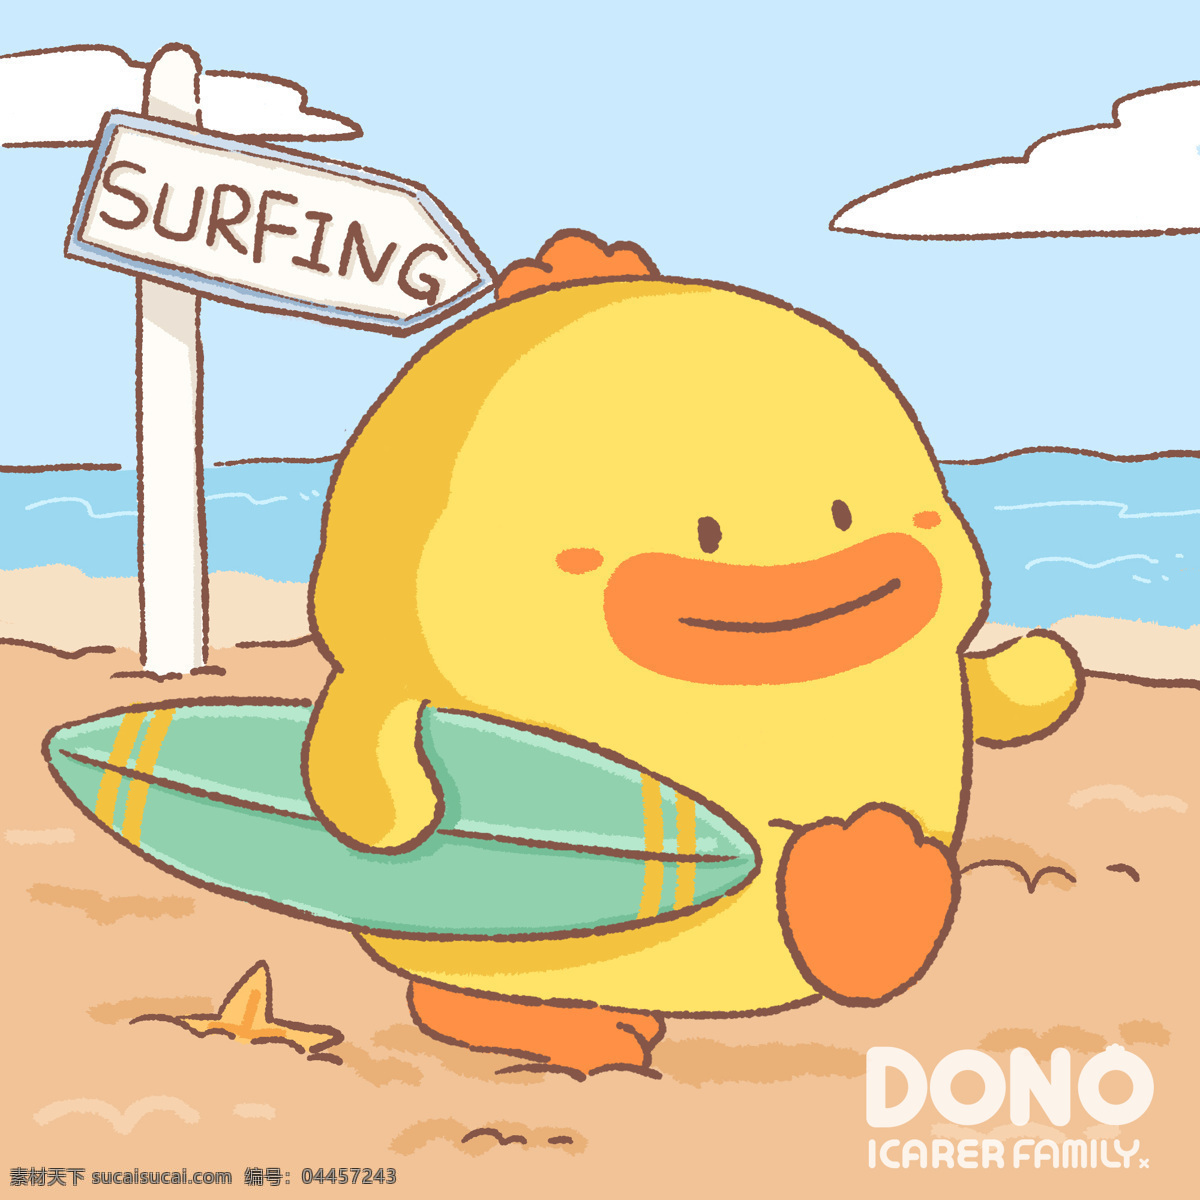 冲浪鸭 插画 卡通 ip 鸭子 头像 可爱 冲浪 冲浪板 沙滩 海边 周末 动漫动画 动漫人物